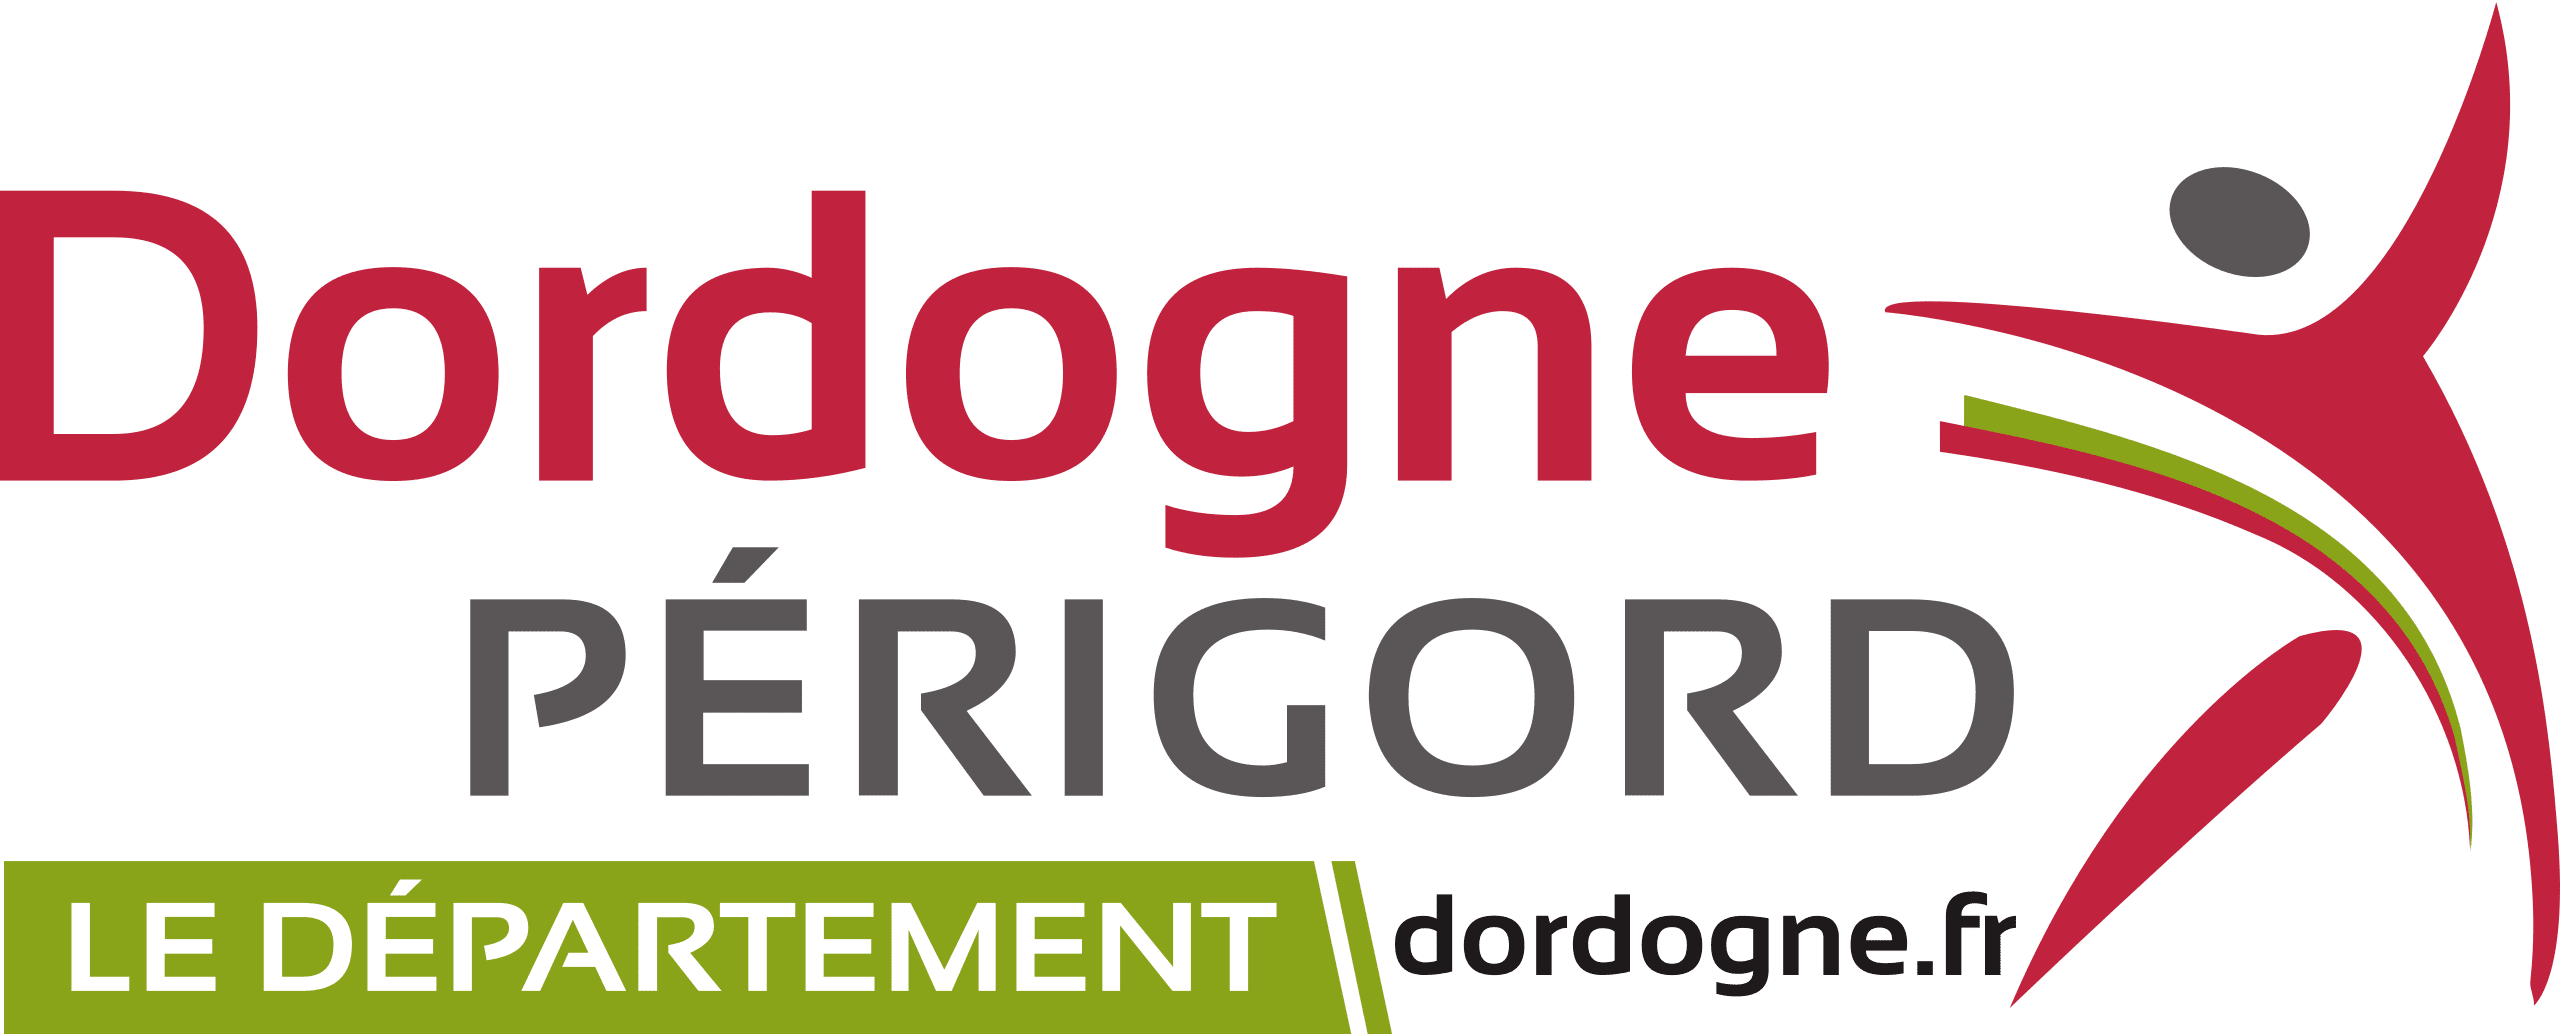 Annonce légale Dordogne